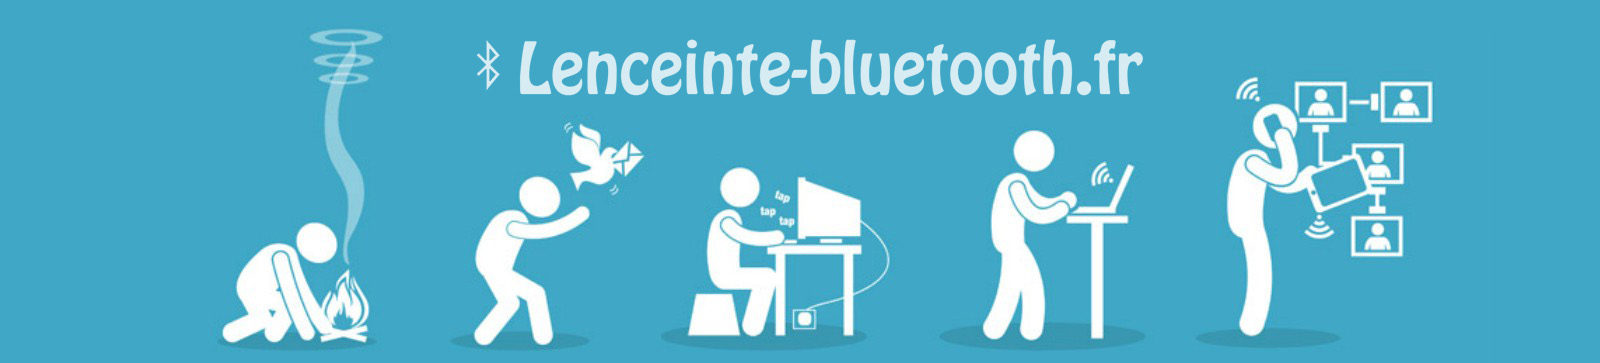 Lenceinte-bluetooth.fr : Blog sur les nouvelles technologies et le high-tech